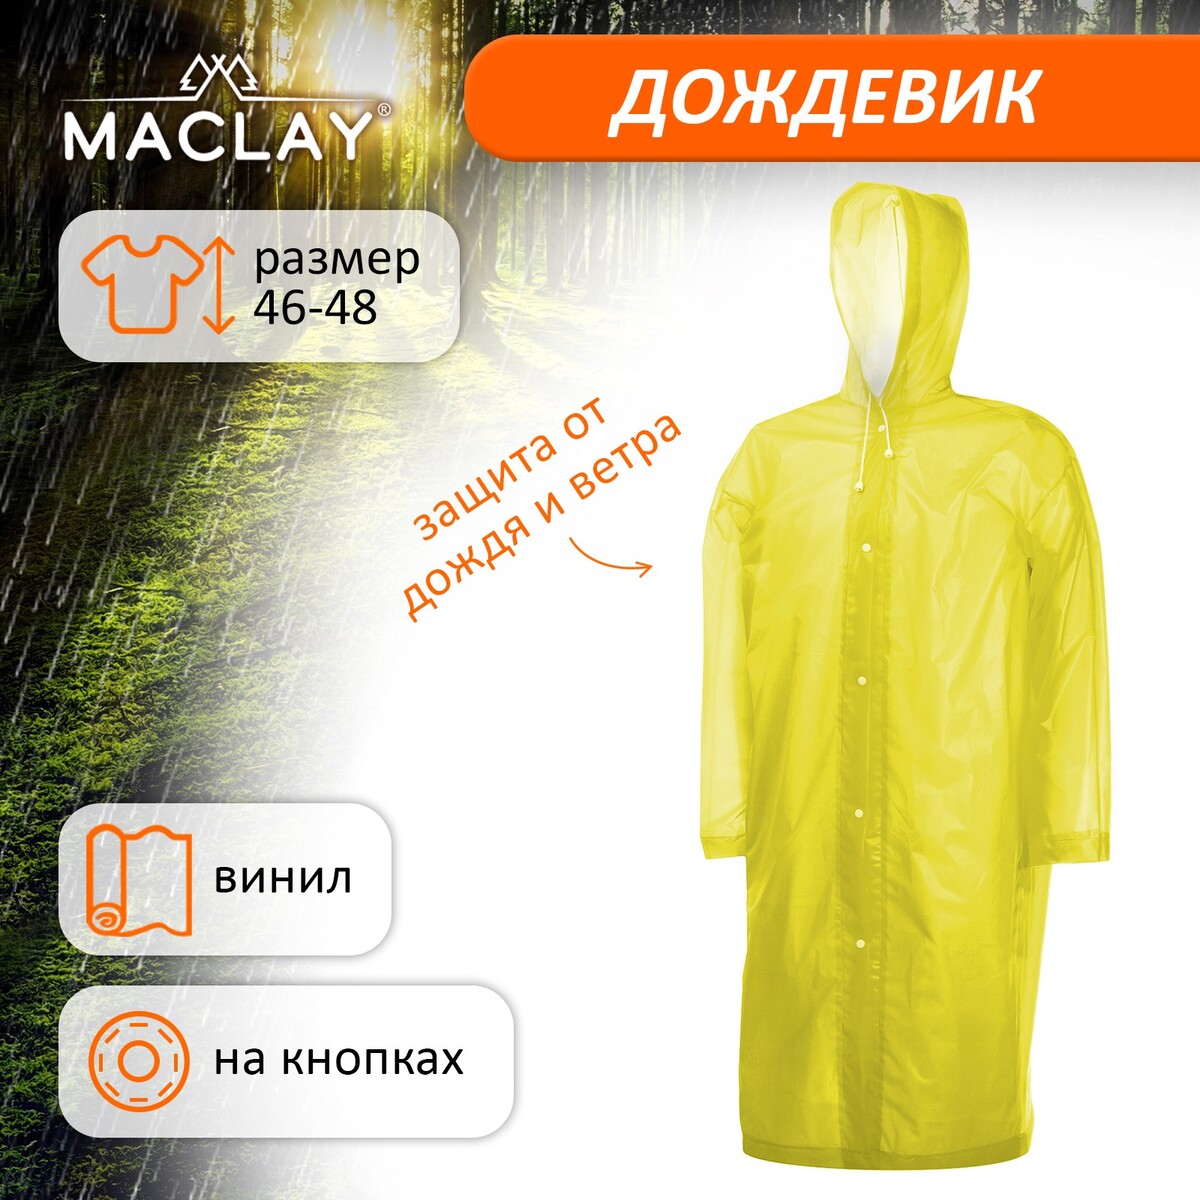 Дождевик-плащ maclay, р. 46-48, цвет желтый No brand